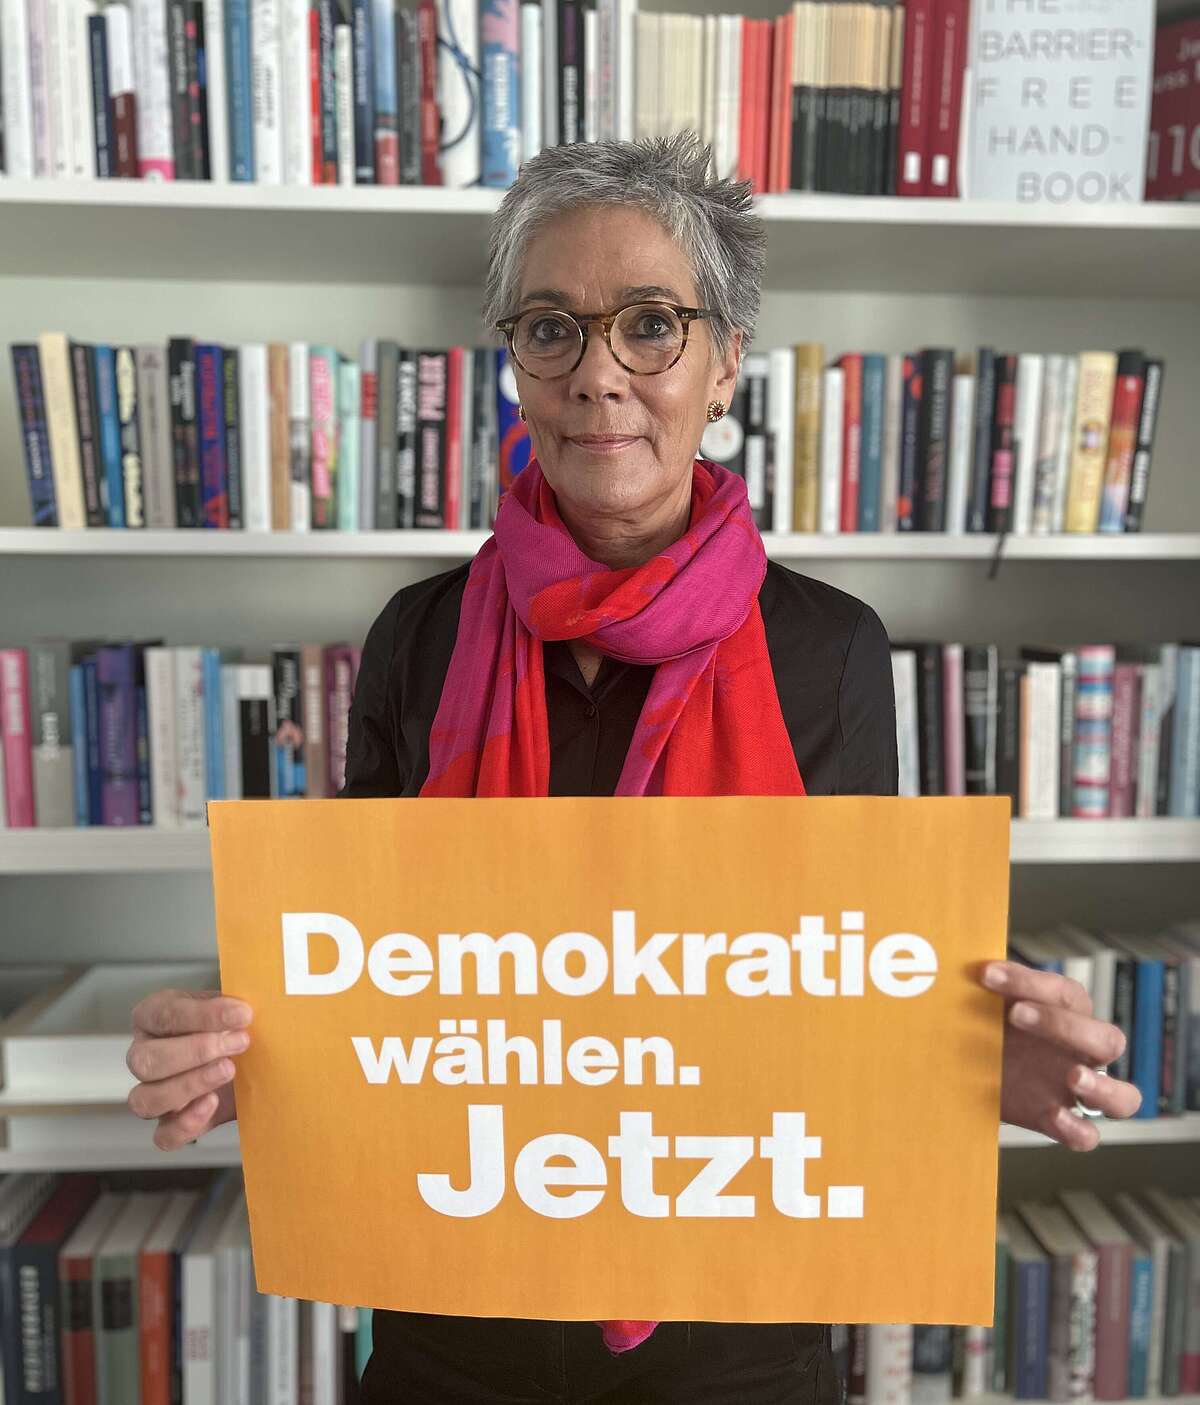 Vorsteherin Karin Schmidt-Friderichs hält ein Plakat in der Hand mit dem Schriftzug "Demokratie wählen. Jetzt."